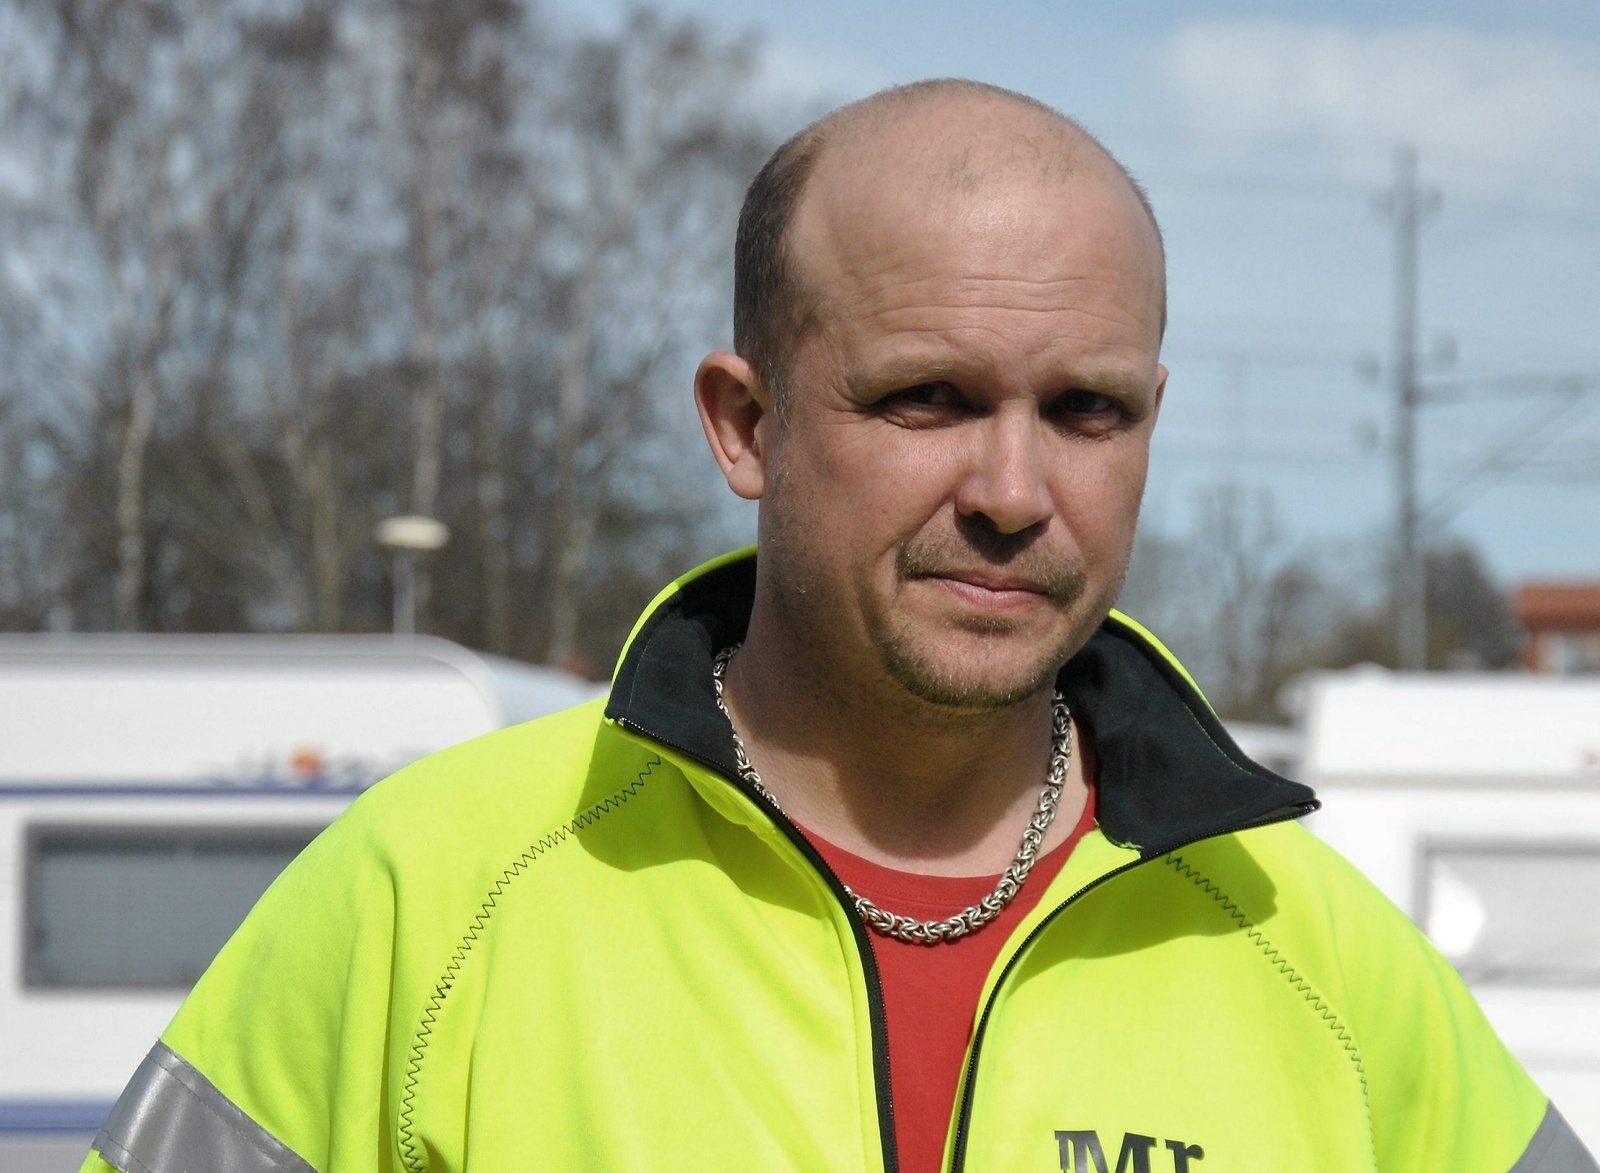 Bollplanket Martin Lind var banchef. Foto: Marika Höghäll